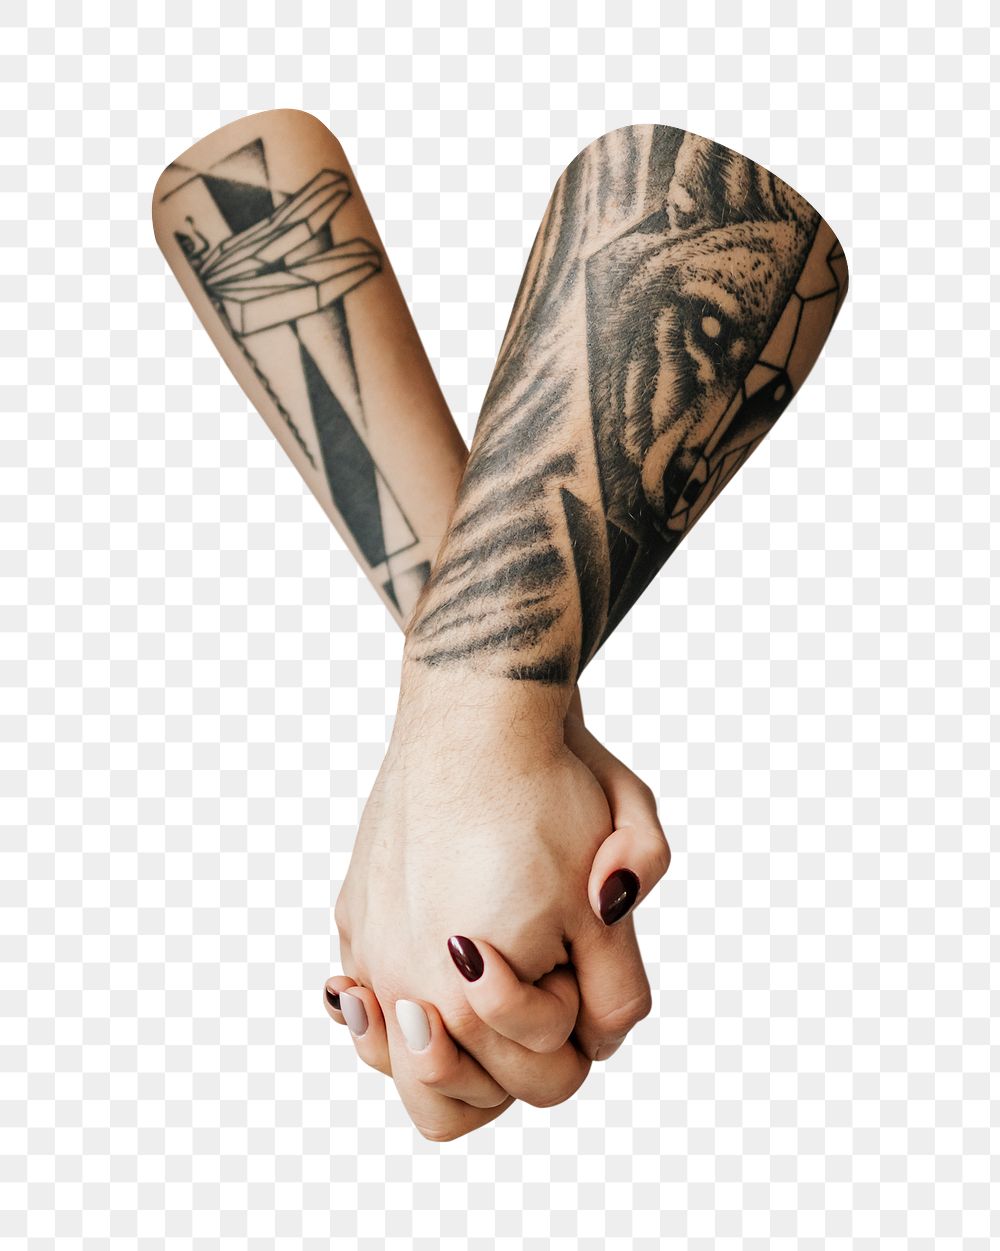 Holding hands png, transparent background